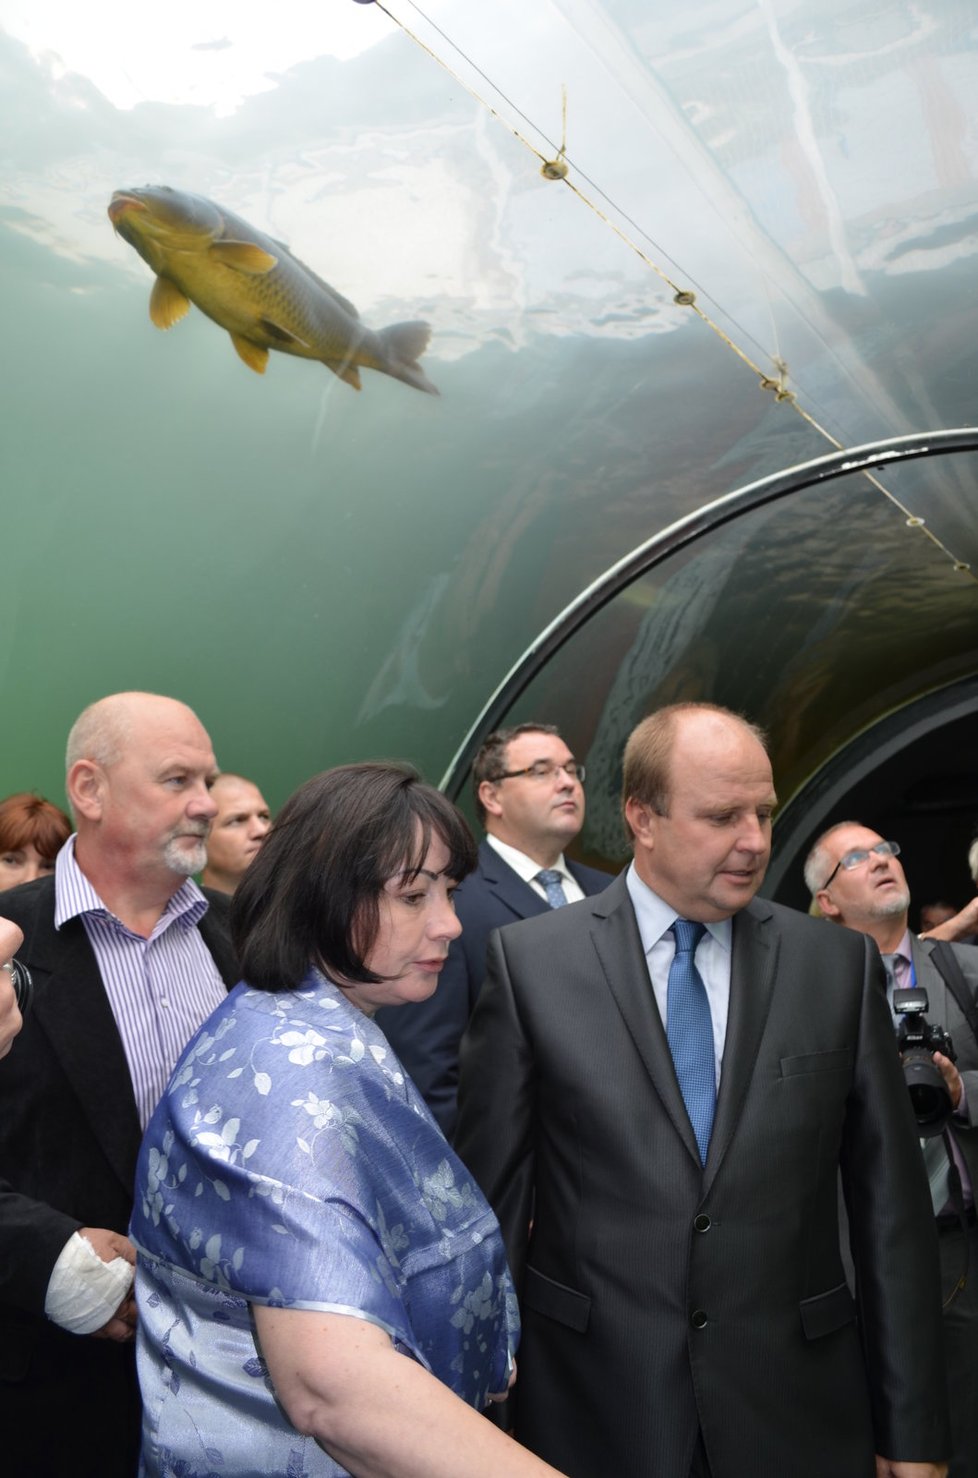 Ivana Zemanová se podívala v Modré i do jediného podvodního tunelu ve střední Evropě, kde lze sledovat sladkovodní ryby přímo v rybníku